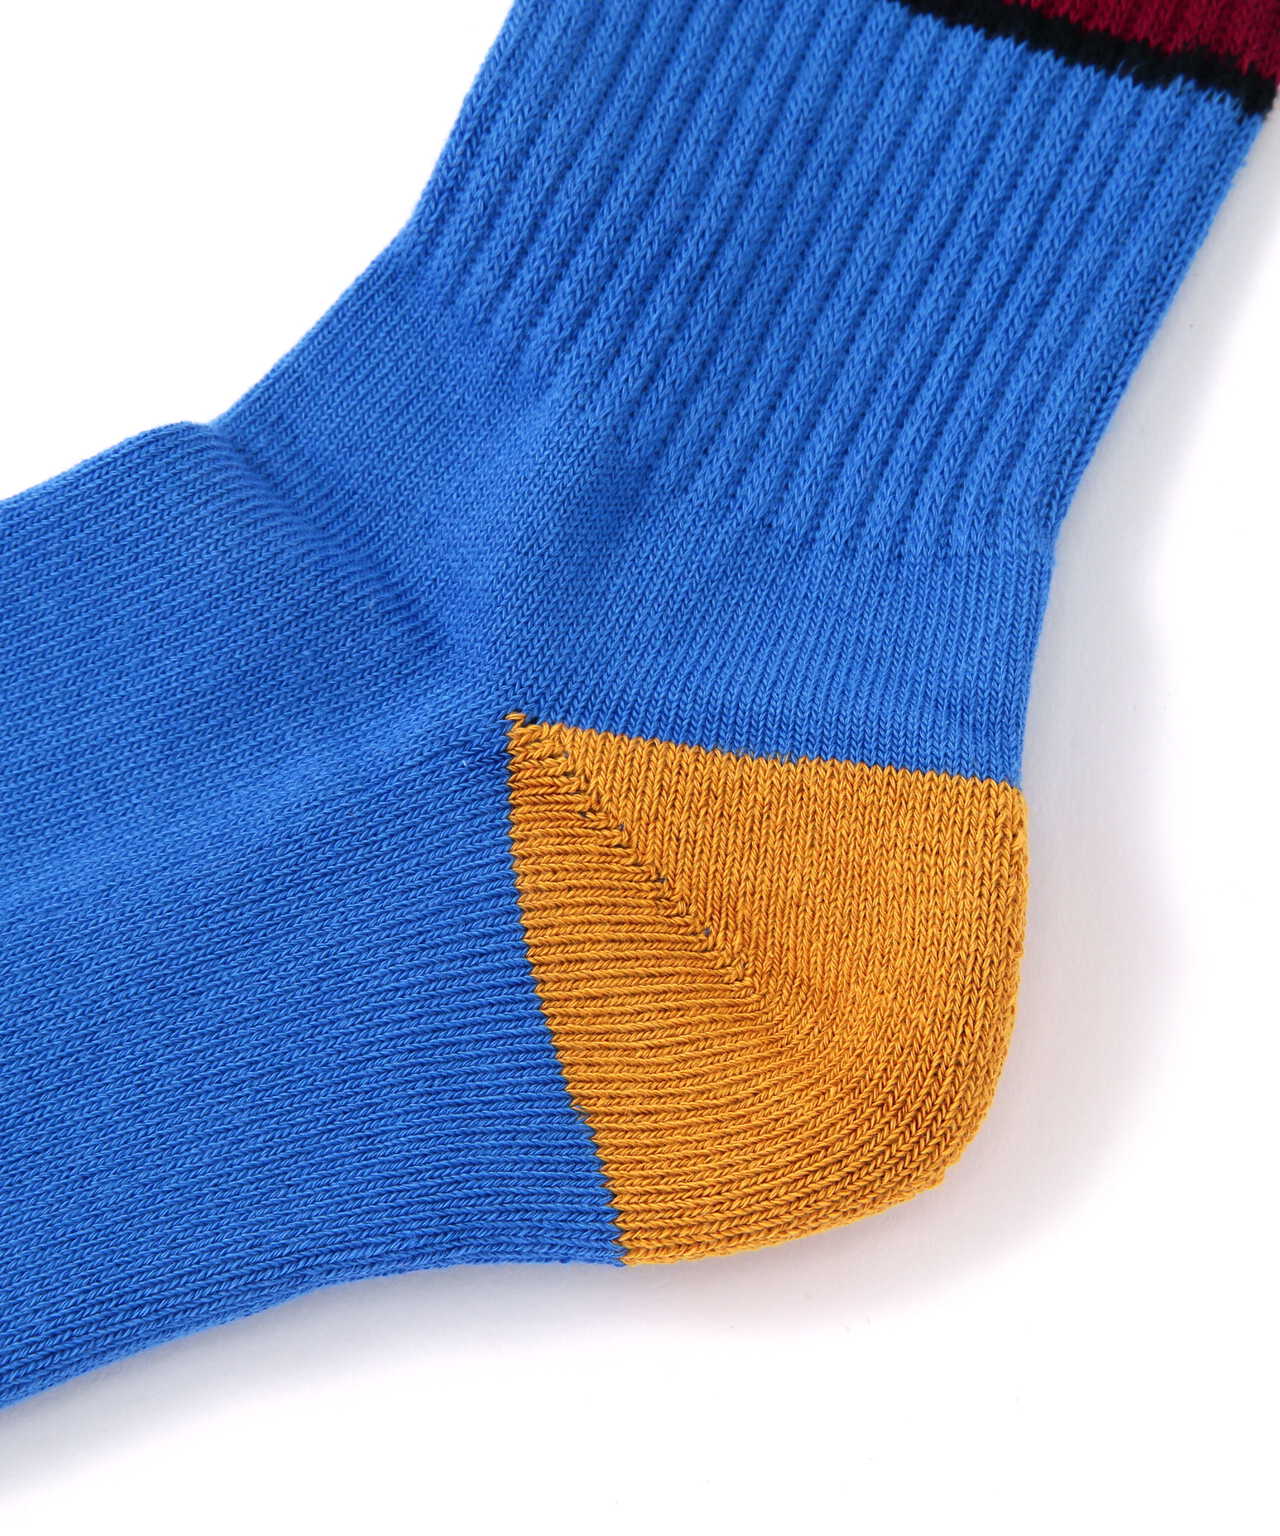 MARCOMONDE（マルコモンド）pile line socks Men's